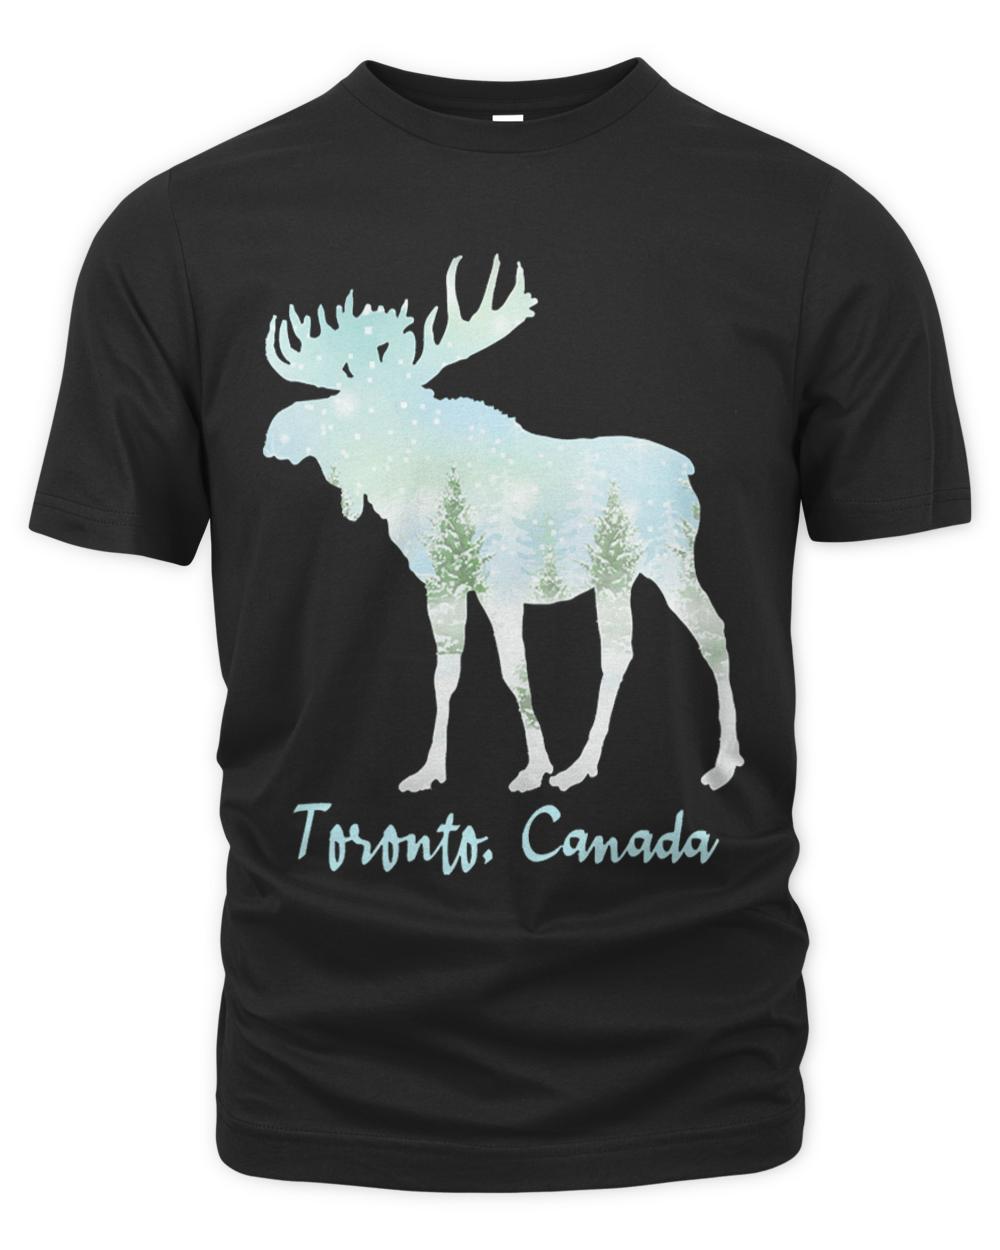 Toronto Canada T- Shirt Toronto Canada T- Shirt